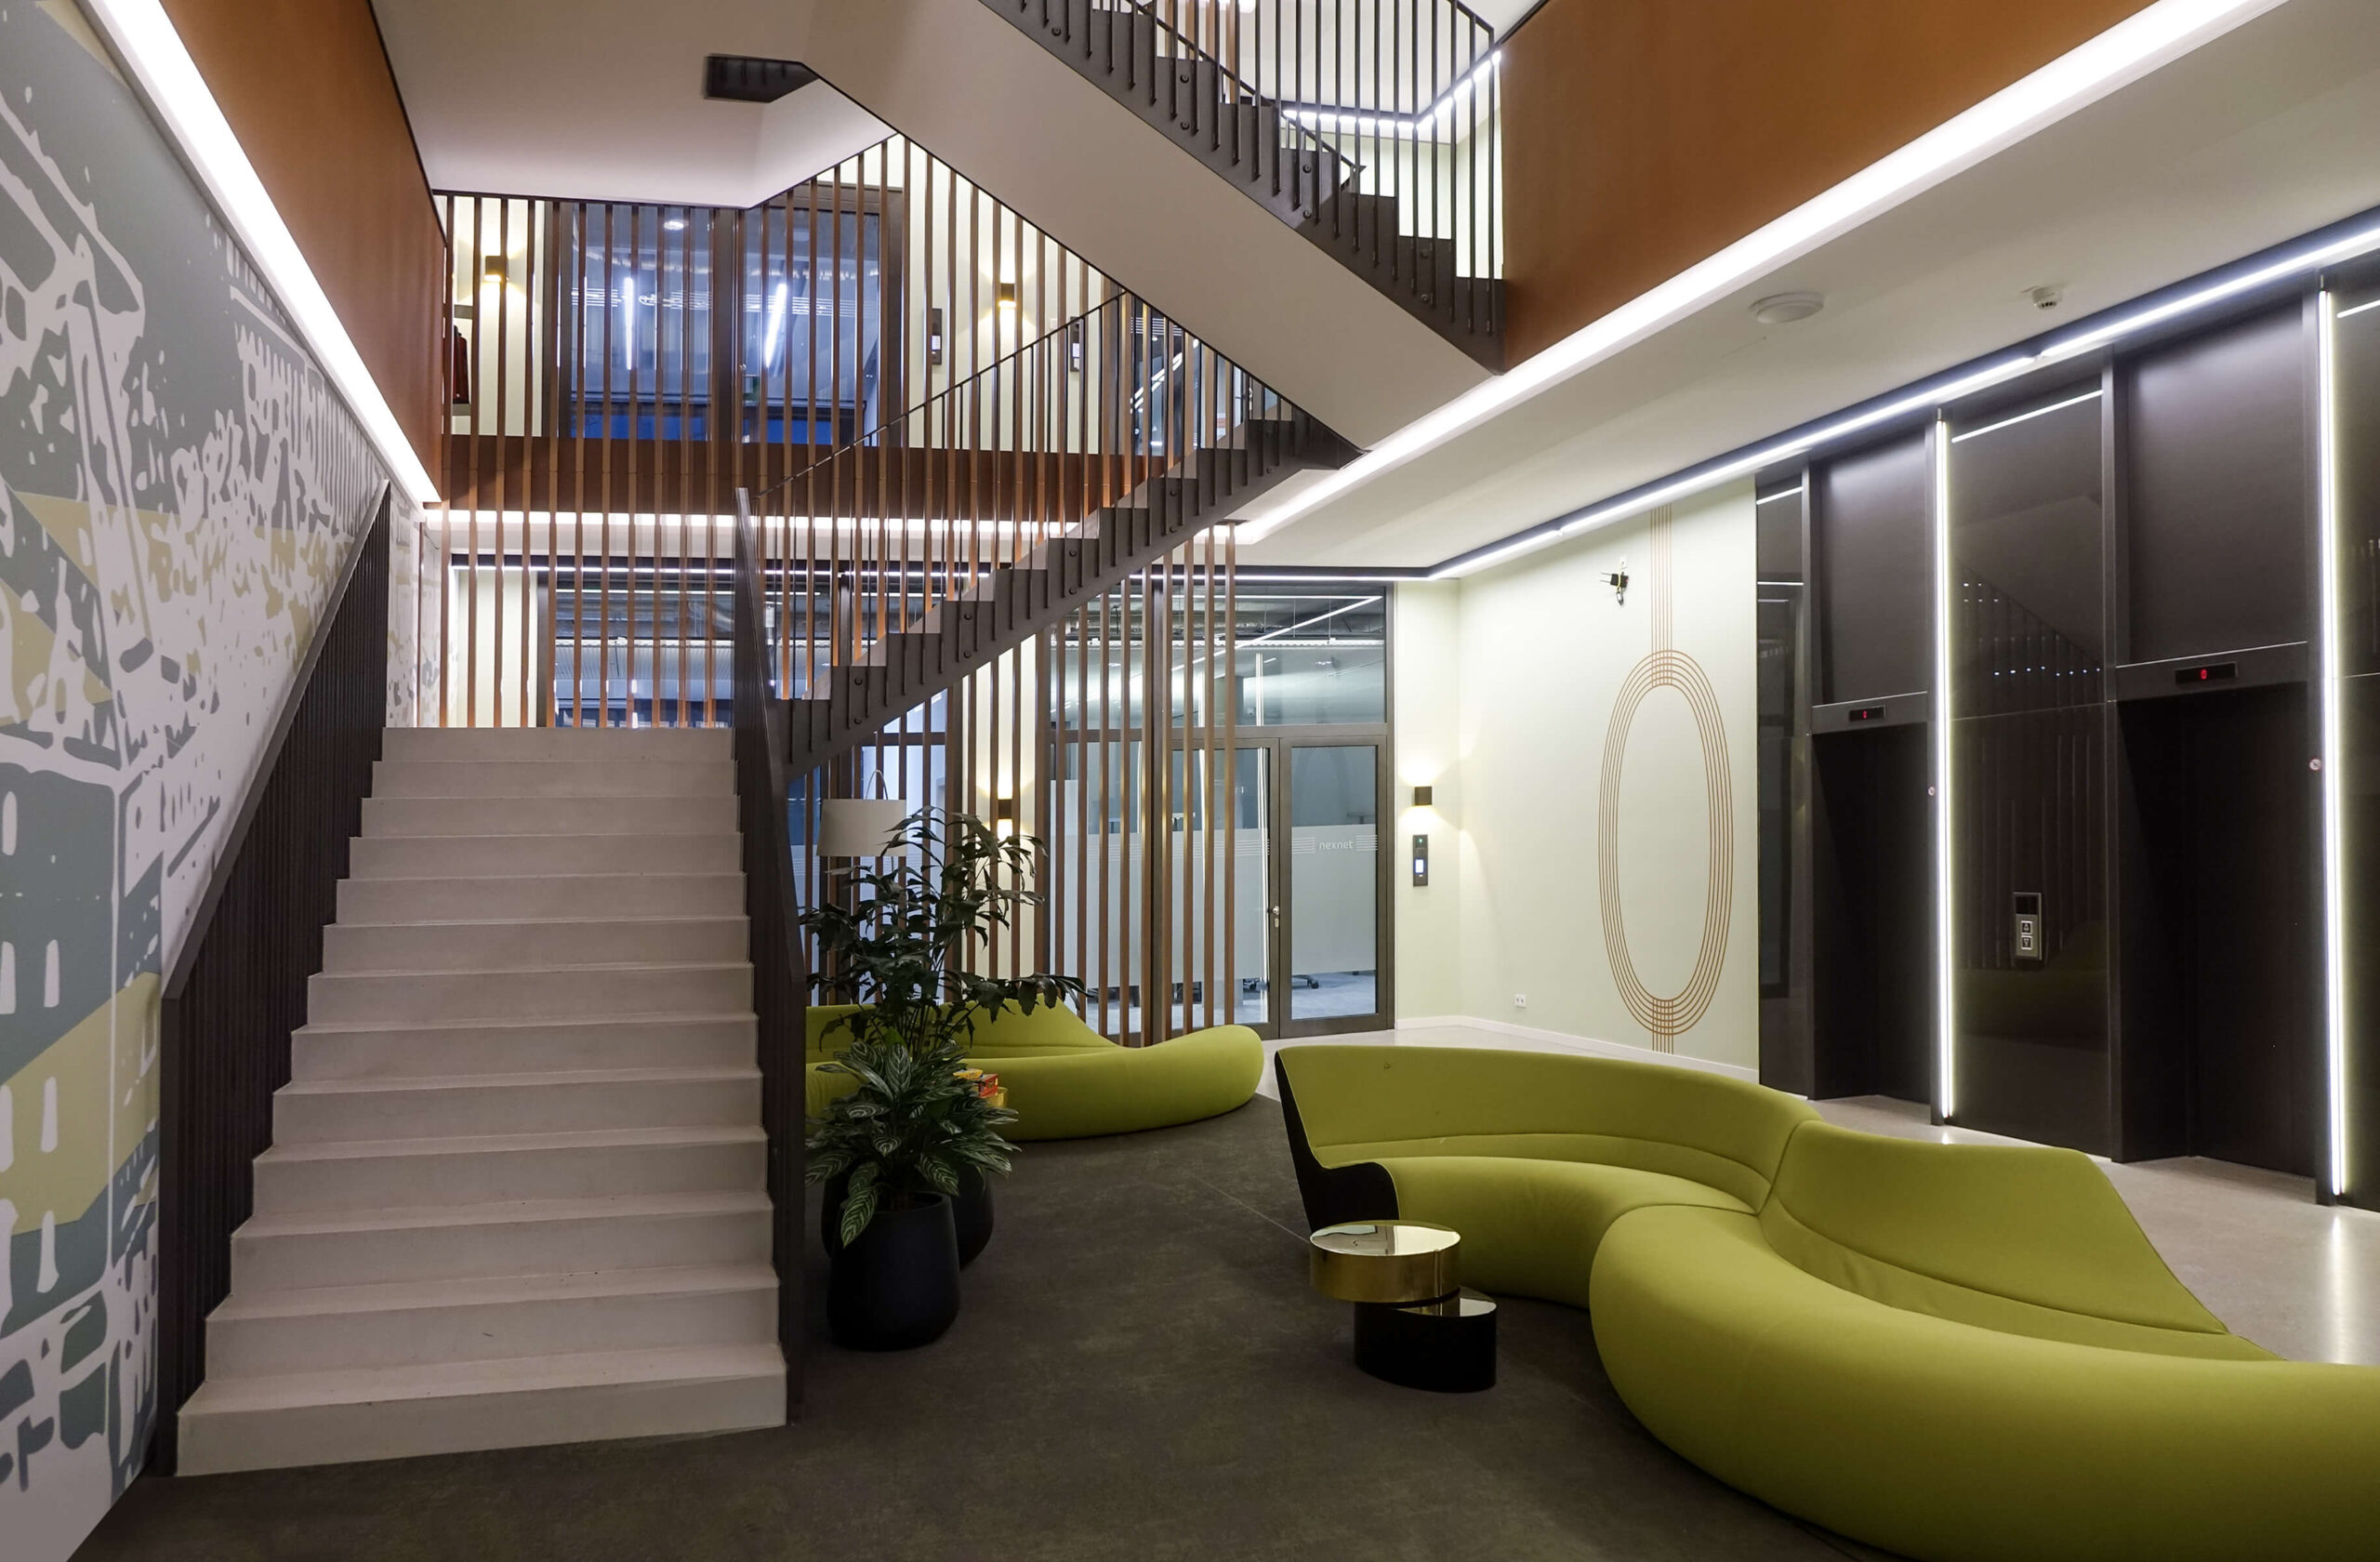 grasblau office building · Etagenkennzeichnung · Liftlanding · Schablonierung · Flucht- und Rettunsgweg · Gold · schwebendes Treppenhaus · Ambiente · Fitness-Programm